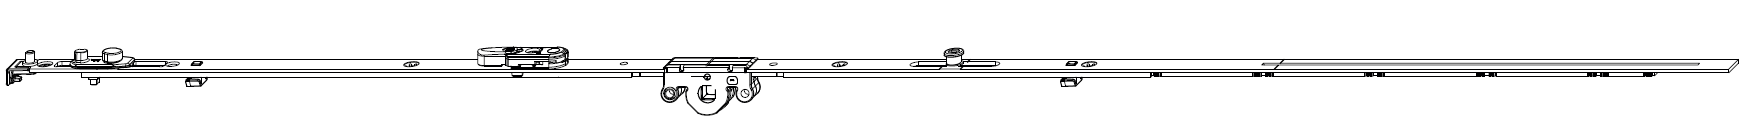 MAICO -  Cremonese MULTI-MATIC anta ribalta antieffrazione altezza maniglia fissa con piedino e dss per ribalta e bilanciere - gr / dim. 2200 - entrata 15 - alt. man. 1050 - lbb/hbb 1951 - 2200